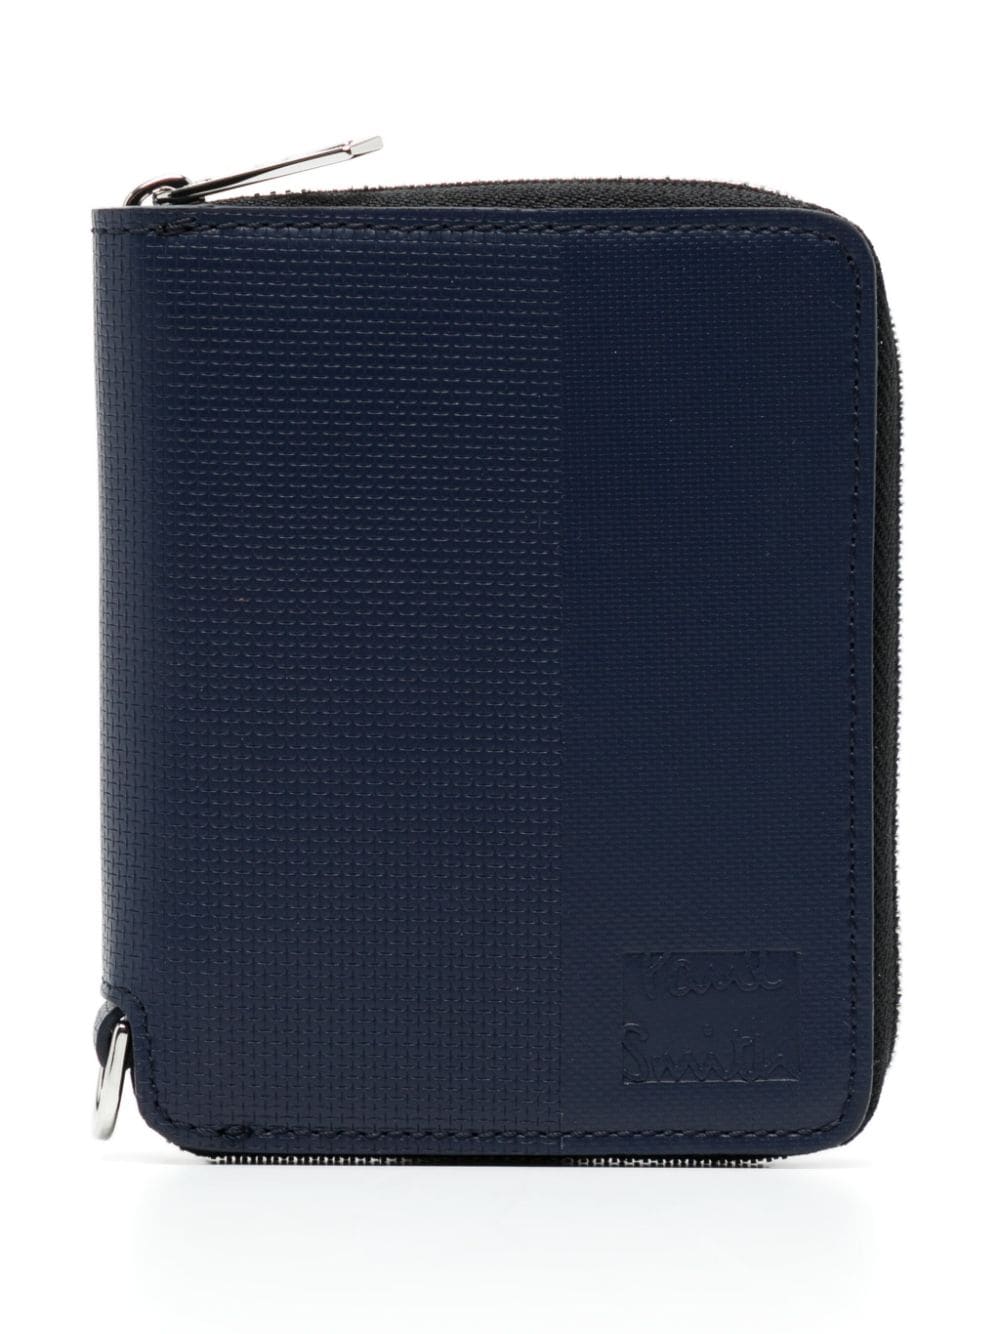 Paul Smith leather zip-around wallet - Blue von Paul Smith